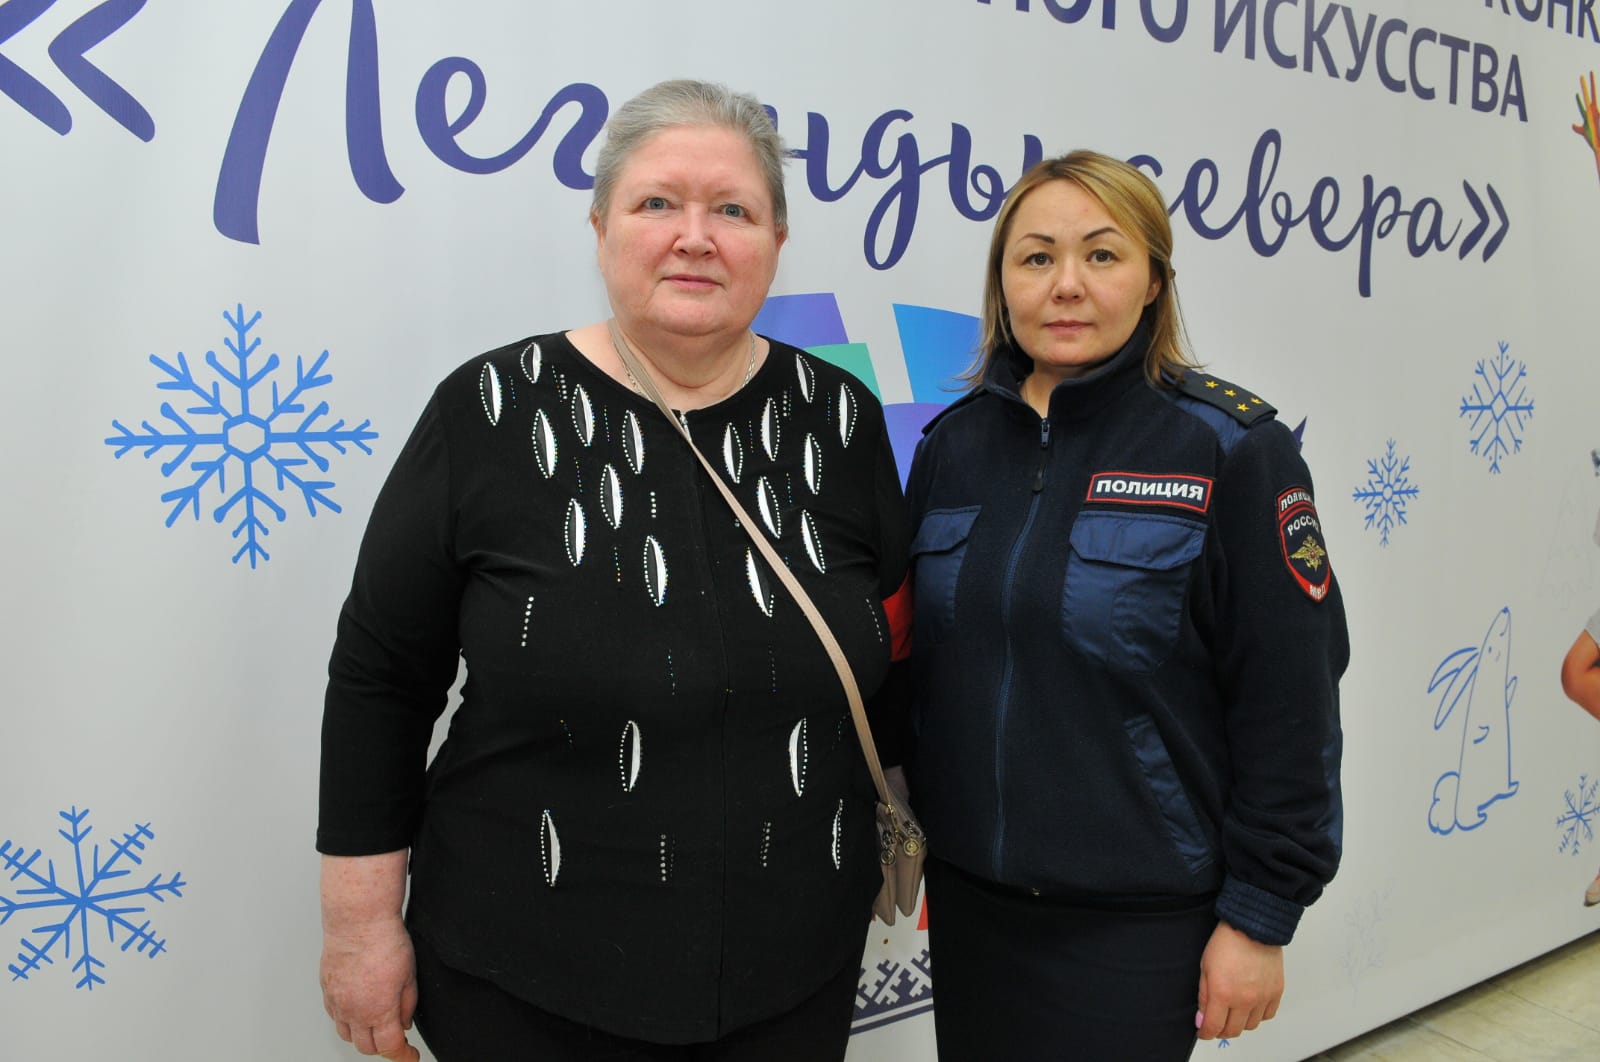 Рейдовые мероприятия, в составе членов народной дружины и сотрудников полиции г. Усинска, продолжаются.